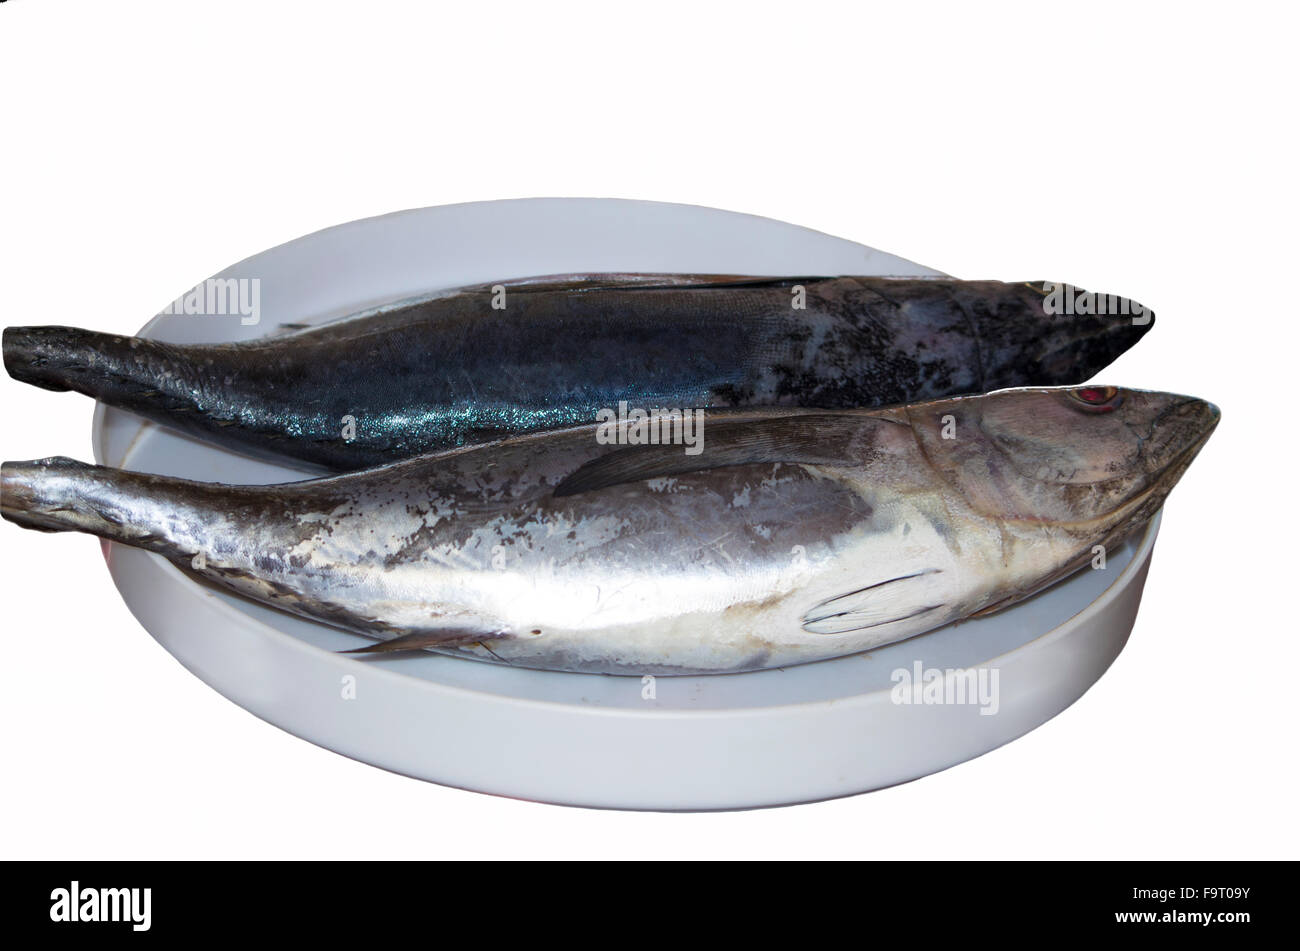 Un poisson rouge sur une assiette blanche,les poissons,un thon,sur une plaque blanche,frais,alimentation,une capture de poissons de mer,un produit, Banque D'Images